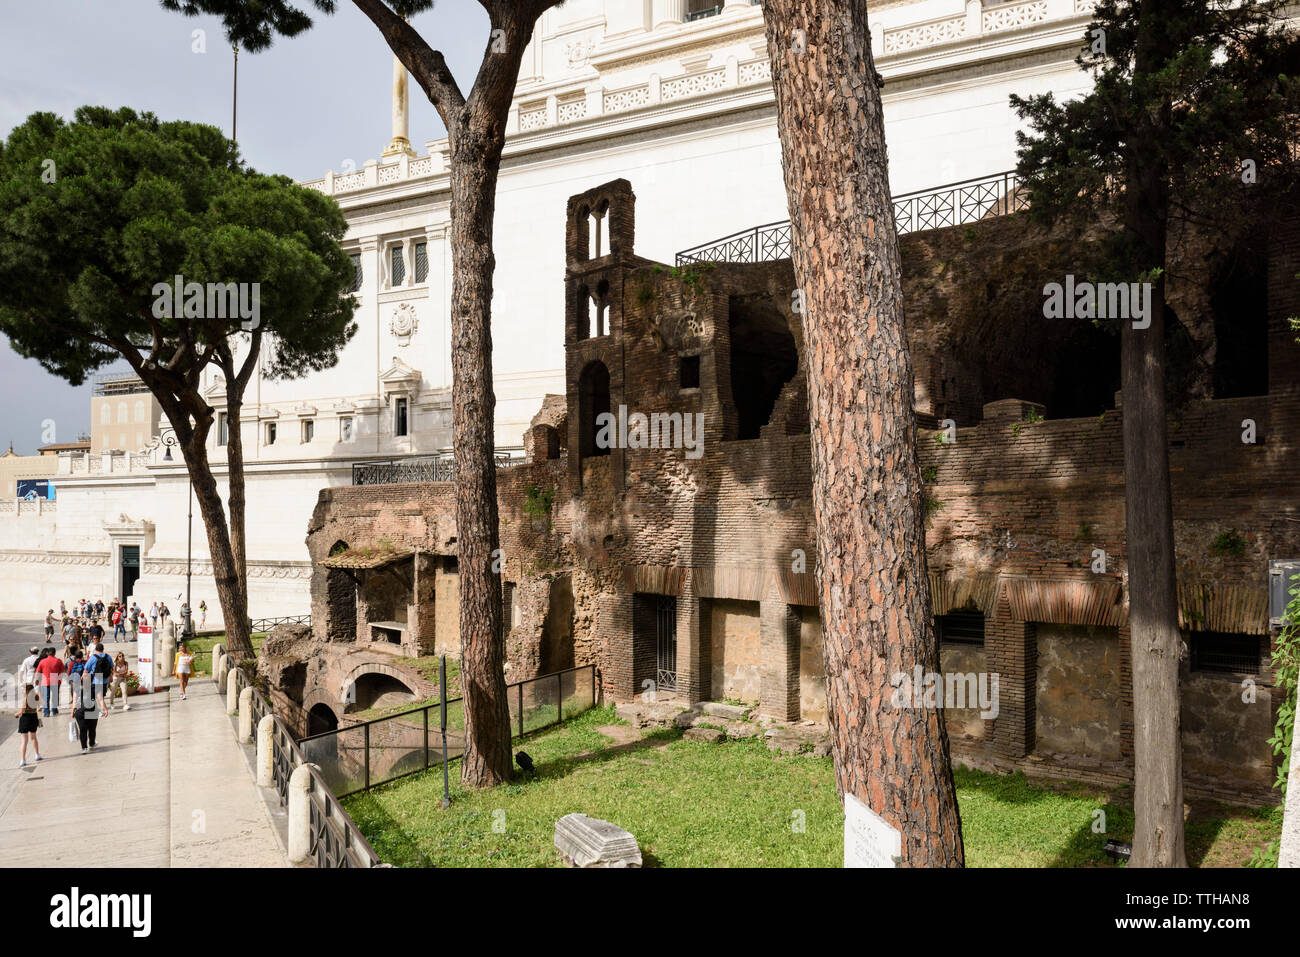 Rome. L'Italie. Insula dell'Ara Coeli, reste d'un bloc appartement romain du 2e siècle, et le clocher (campanile) de la 11e siècle ch Banque D'Images